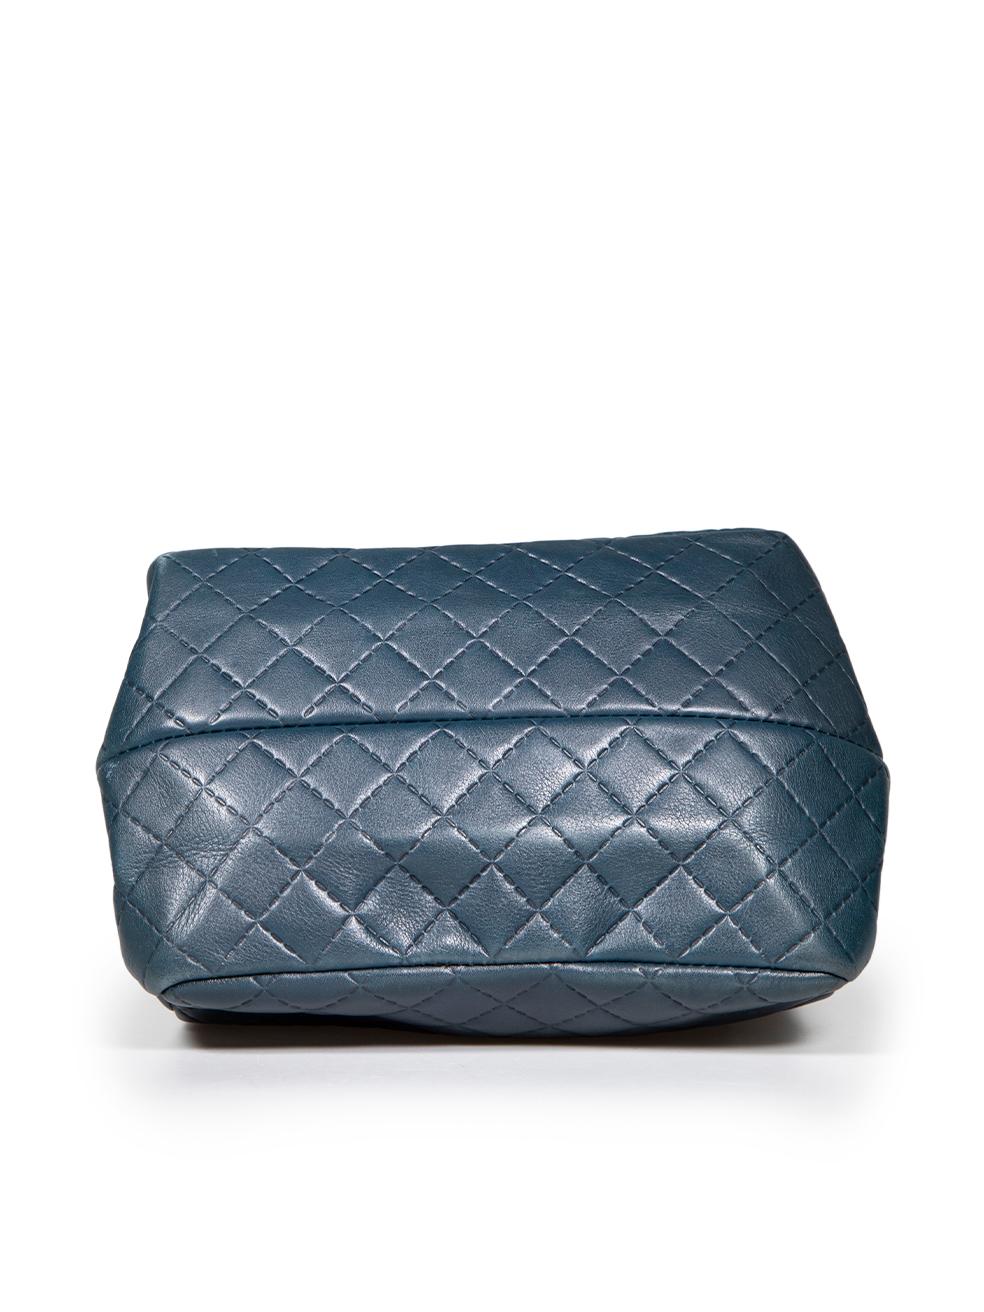 Women's Carolina Herrera Blue Leather Embossed Bow Shoulder Bag For Sale